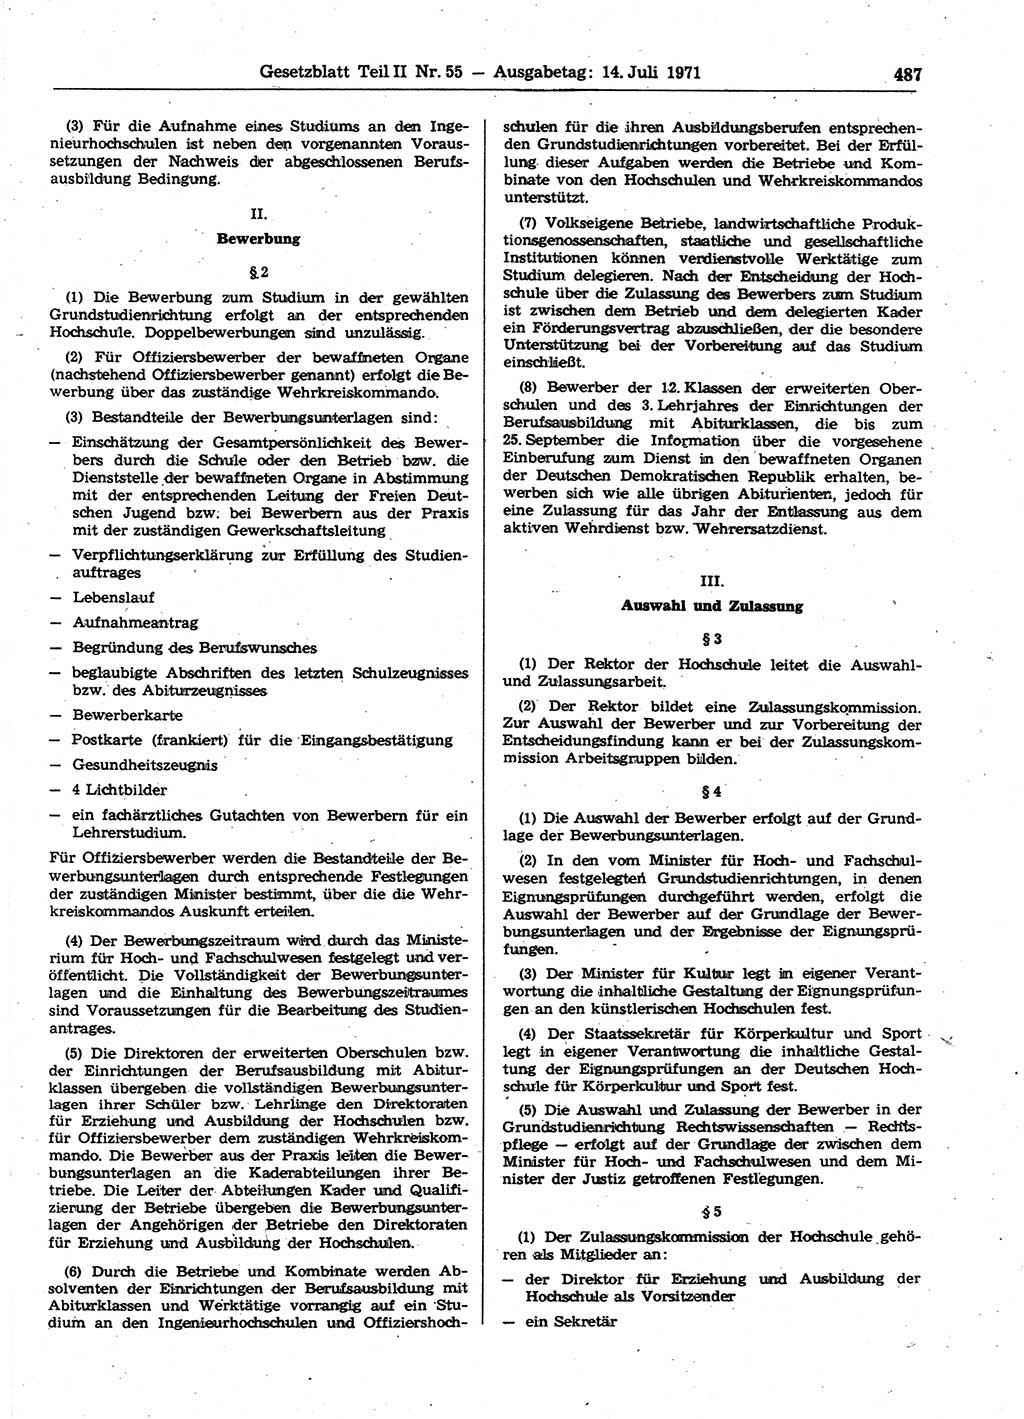 Gesetzblatt (GBl.) der Deutschen Demokratischen Republik (DDR) Teil ⅠⅠ 1971, Seite 487 (GBl. DDR ⅠⅠ 1971, S. 487)